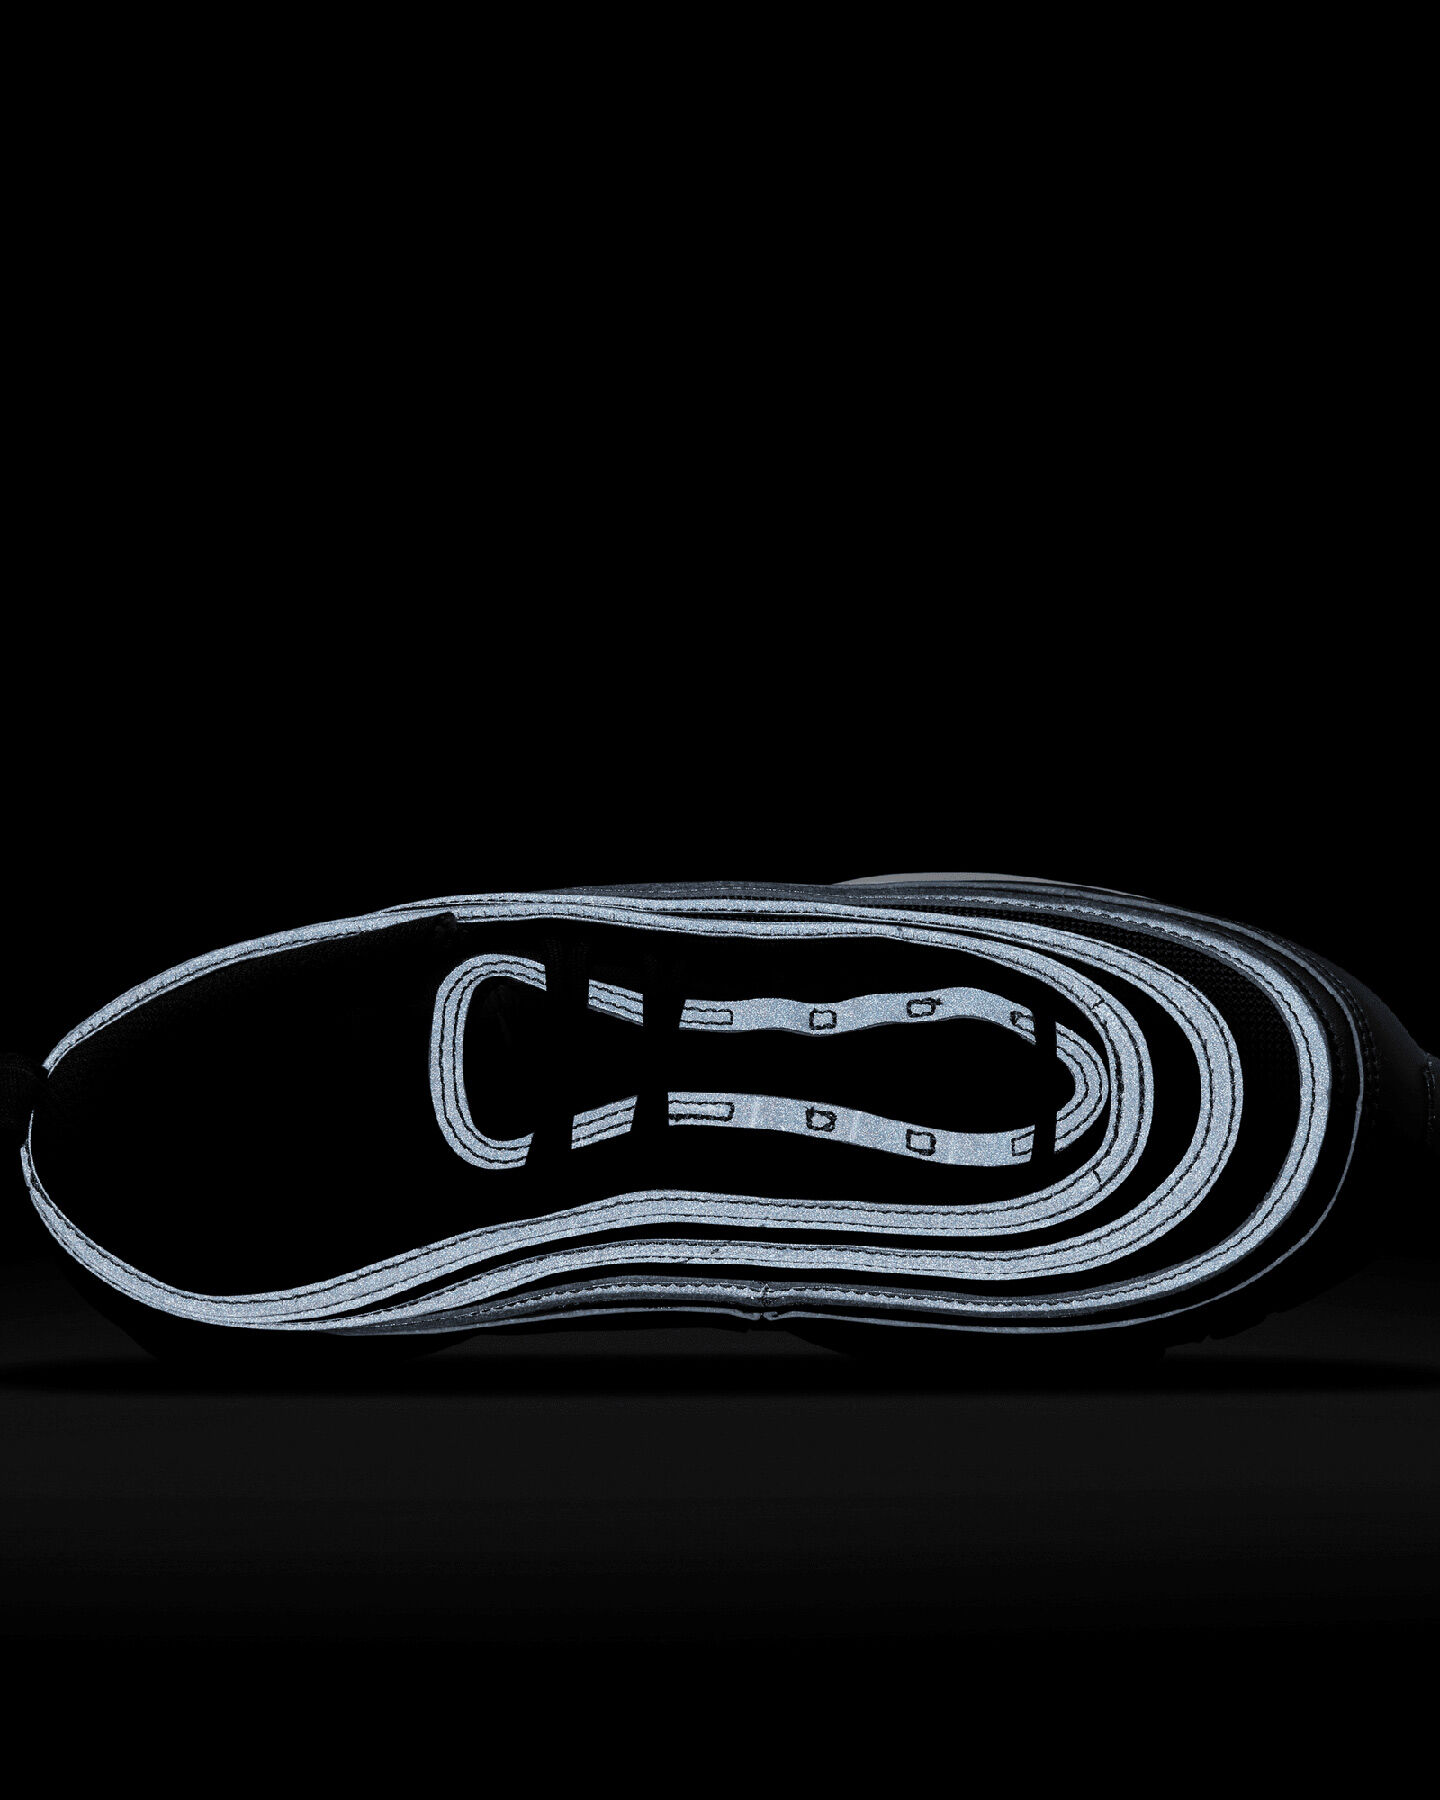  Scarpe sneakers NIKE AIR MAX 97 W S5502243|001|6.5 scatto 5